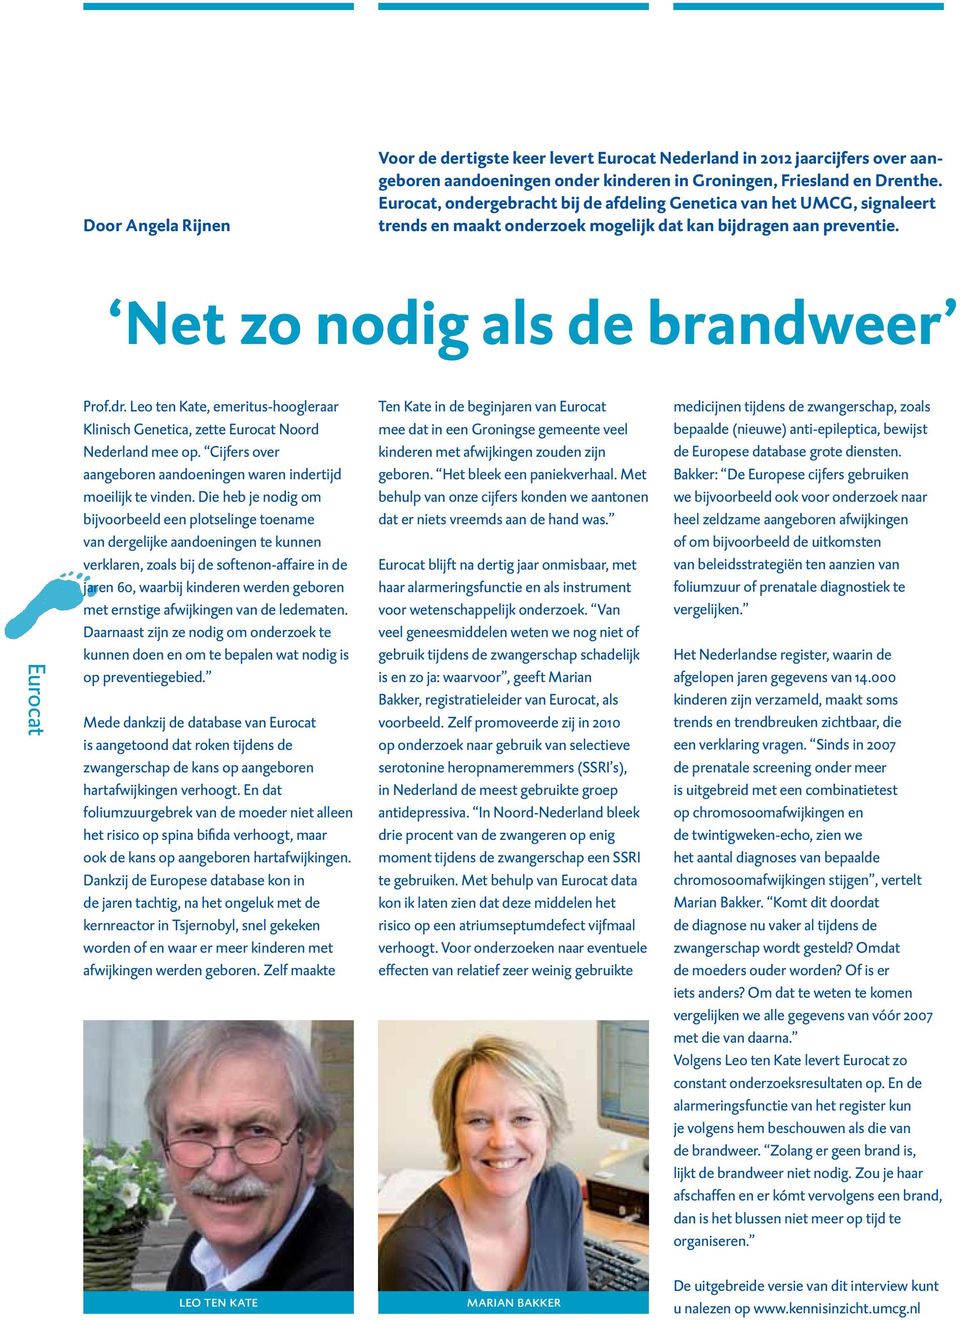 gen aan preventie. Net zo nodig als de brandweer Eurocat Prof.dr. Leo ten Kate, emeritus-hoogleraar Klinisch Genetica, zette Eurocat Noord Nederland mee op.